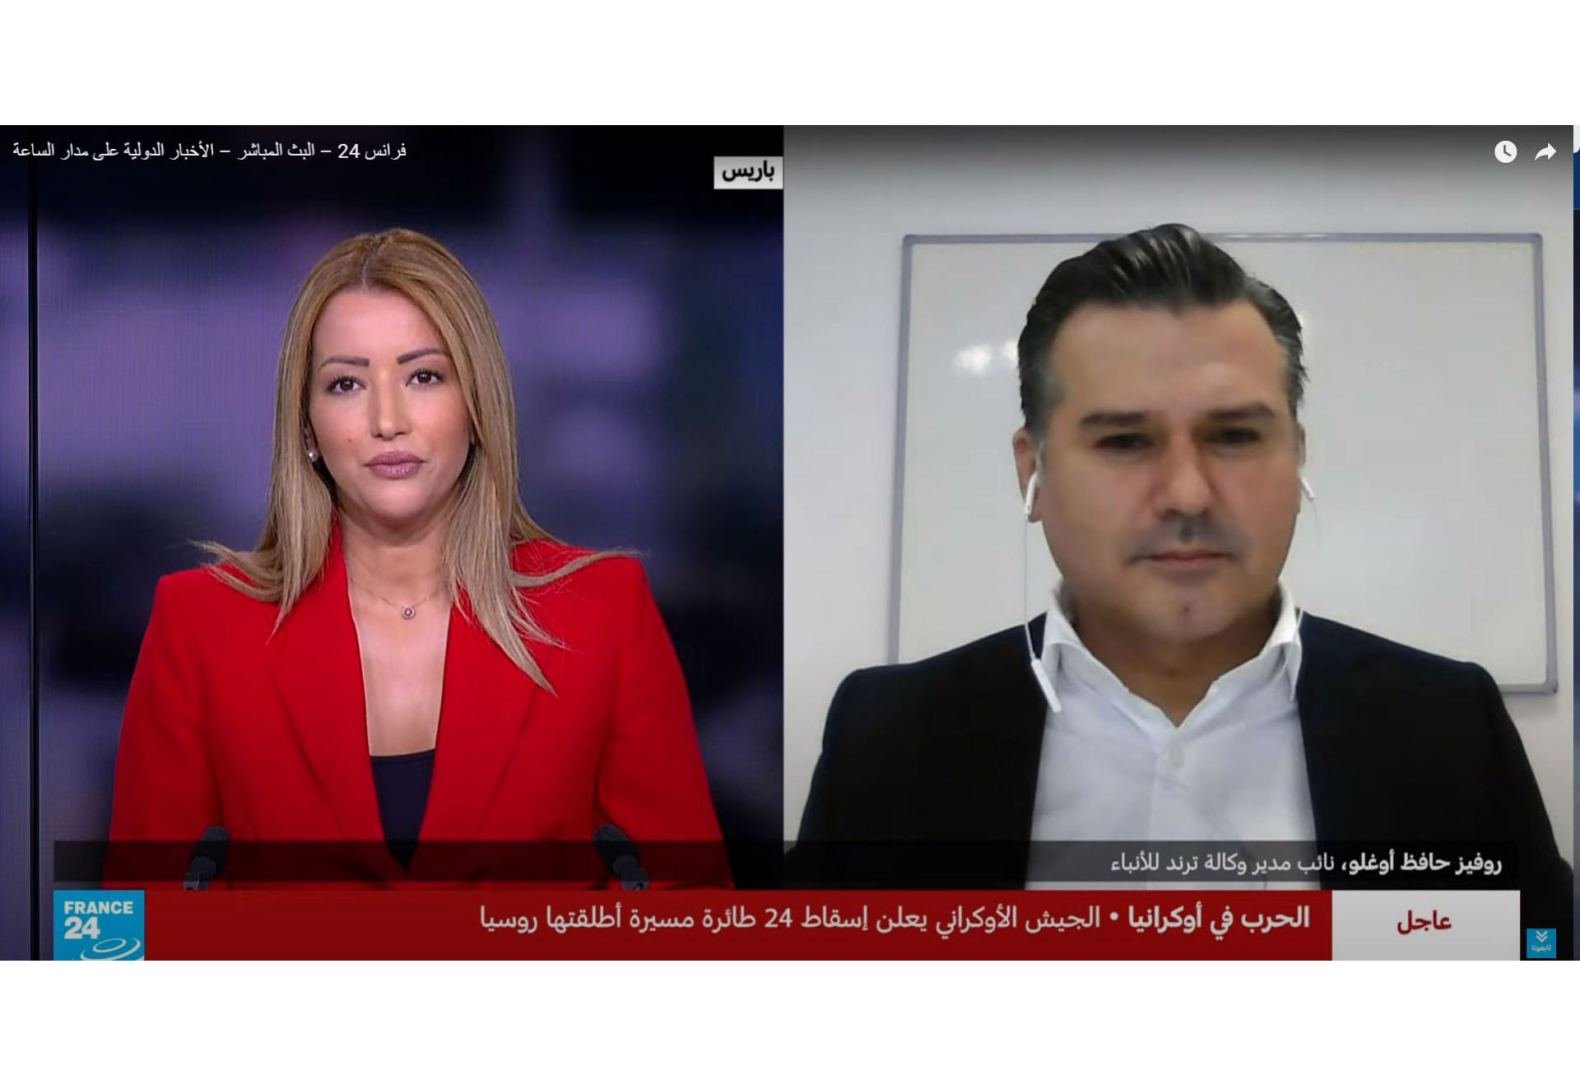 Макрон ведет себя как армянский депутат - Руфиз Хафизоглу в интервью телеканалу France 24